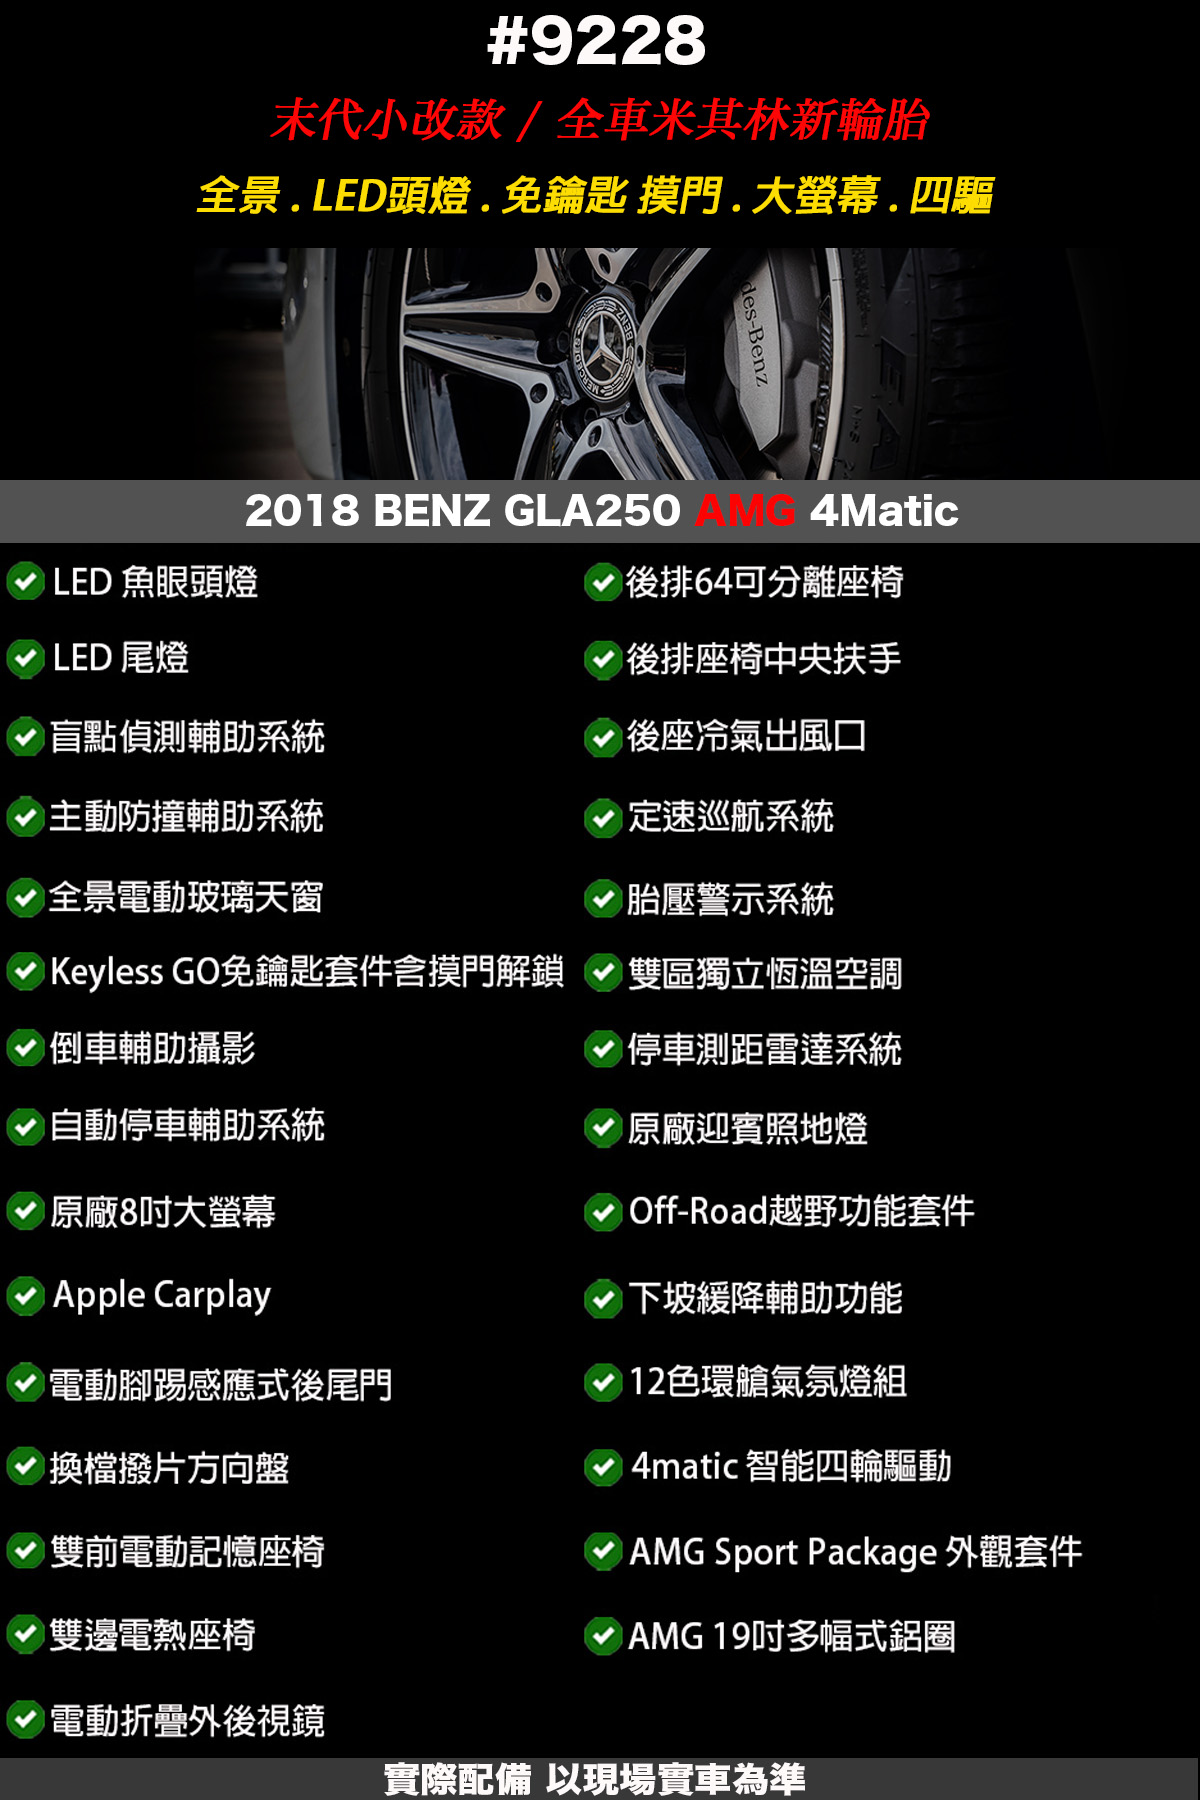 9228 1 - 2018 BENZ GLA250 AMG 4Matic 小改款#9228 賓士第三方認證